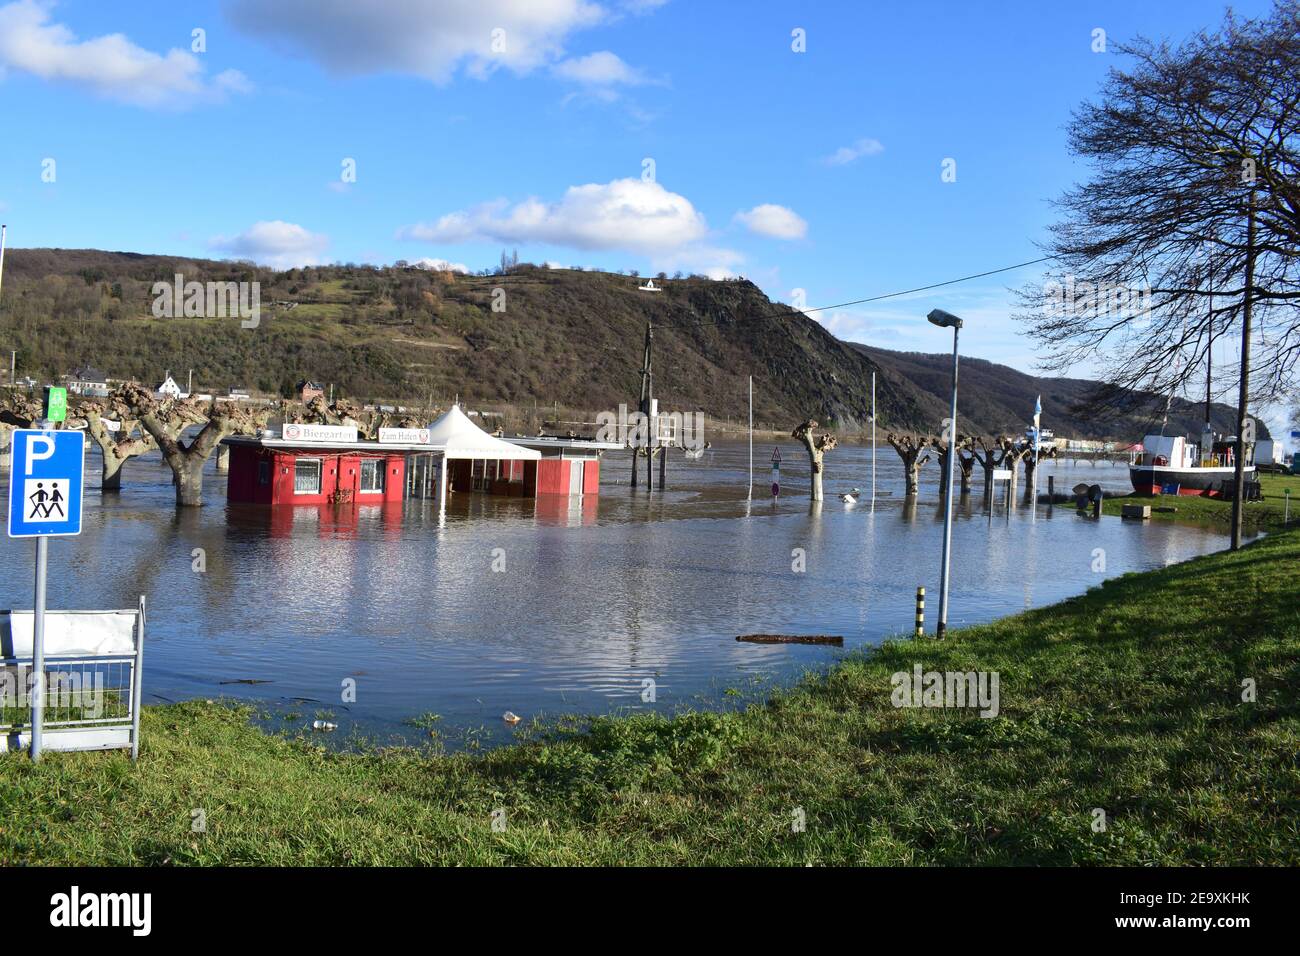 Parc riverain inondé à Brohl-Lützing, Rhin 2021 Banque D'Images